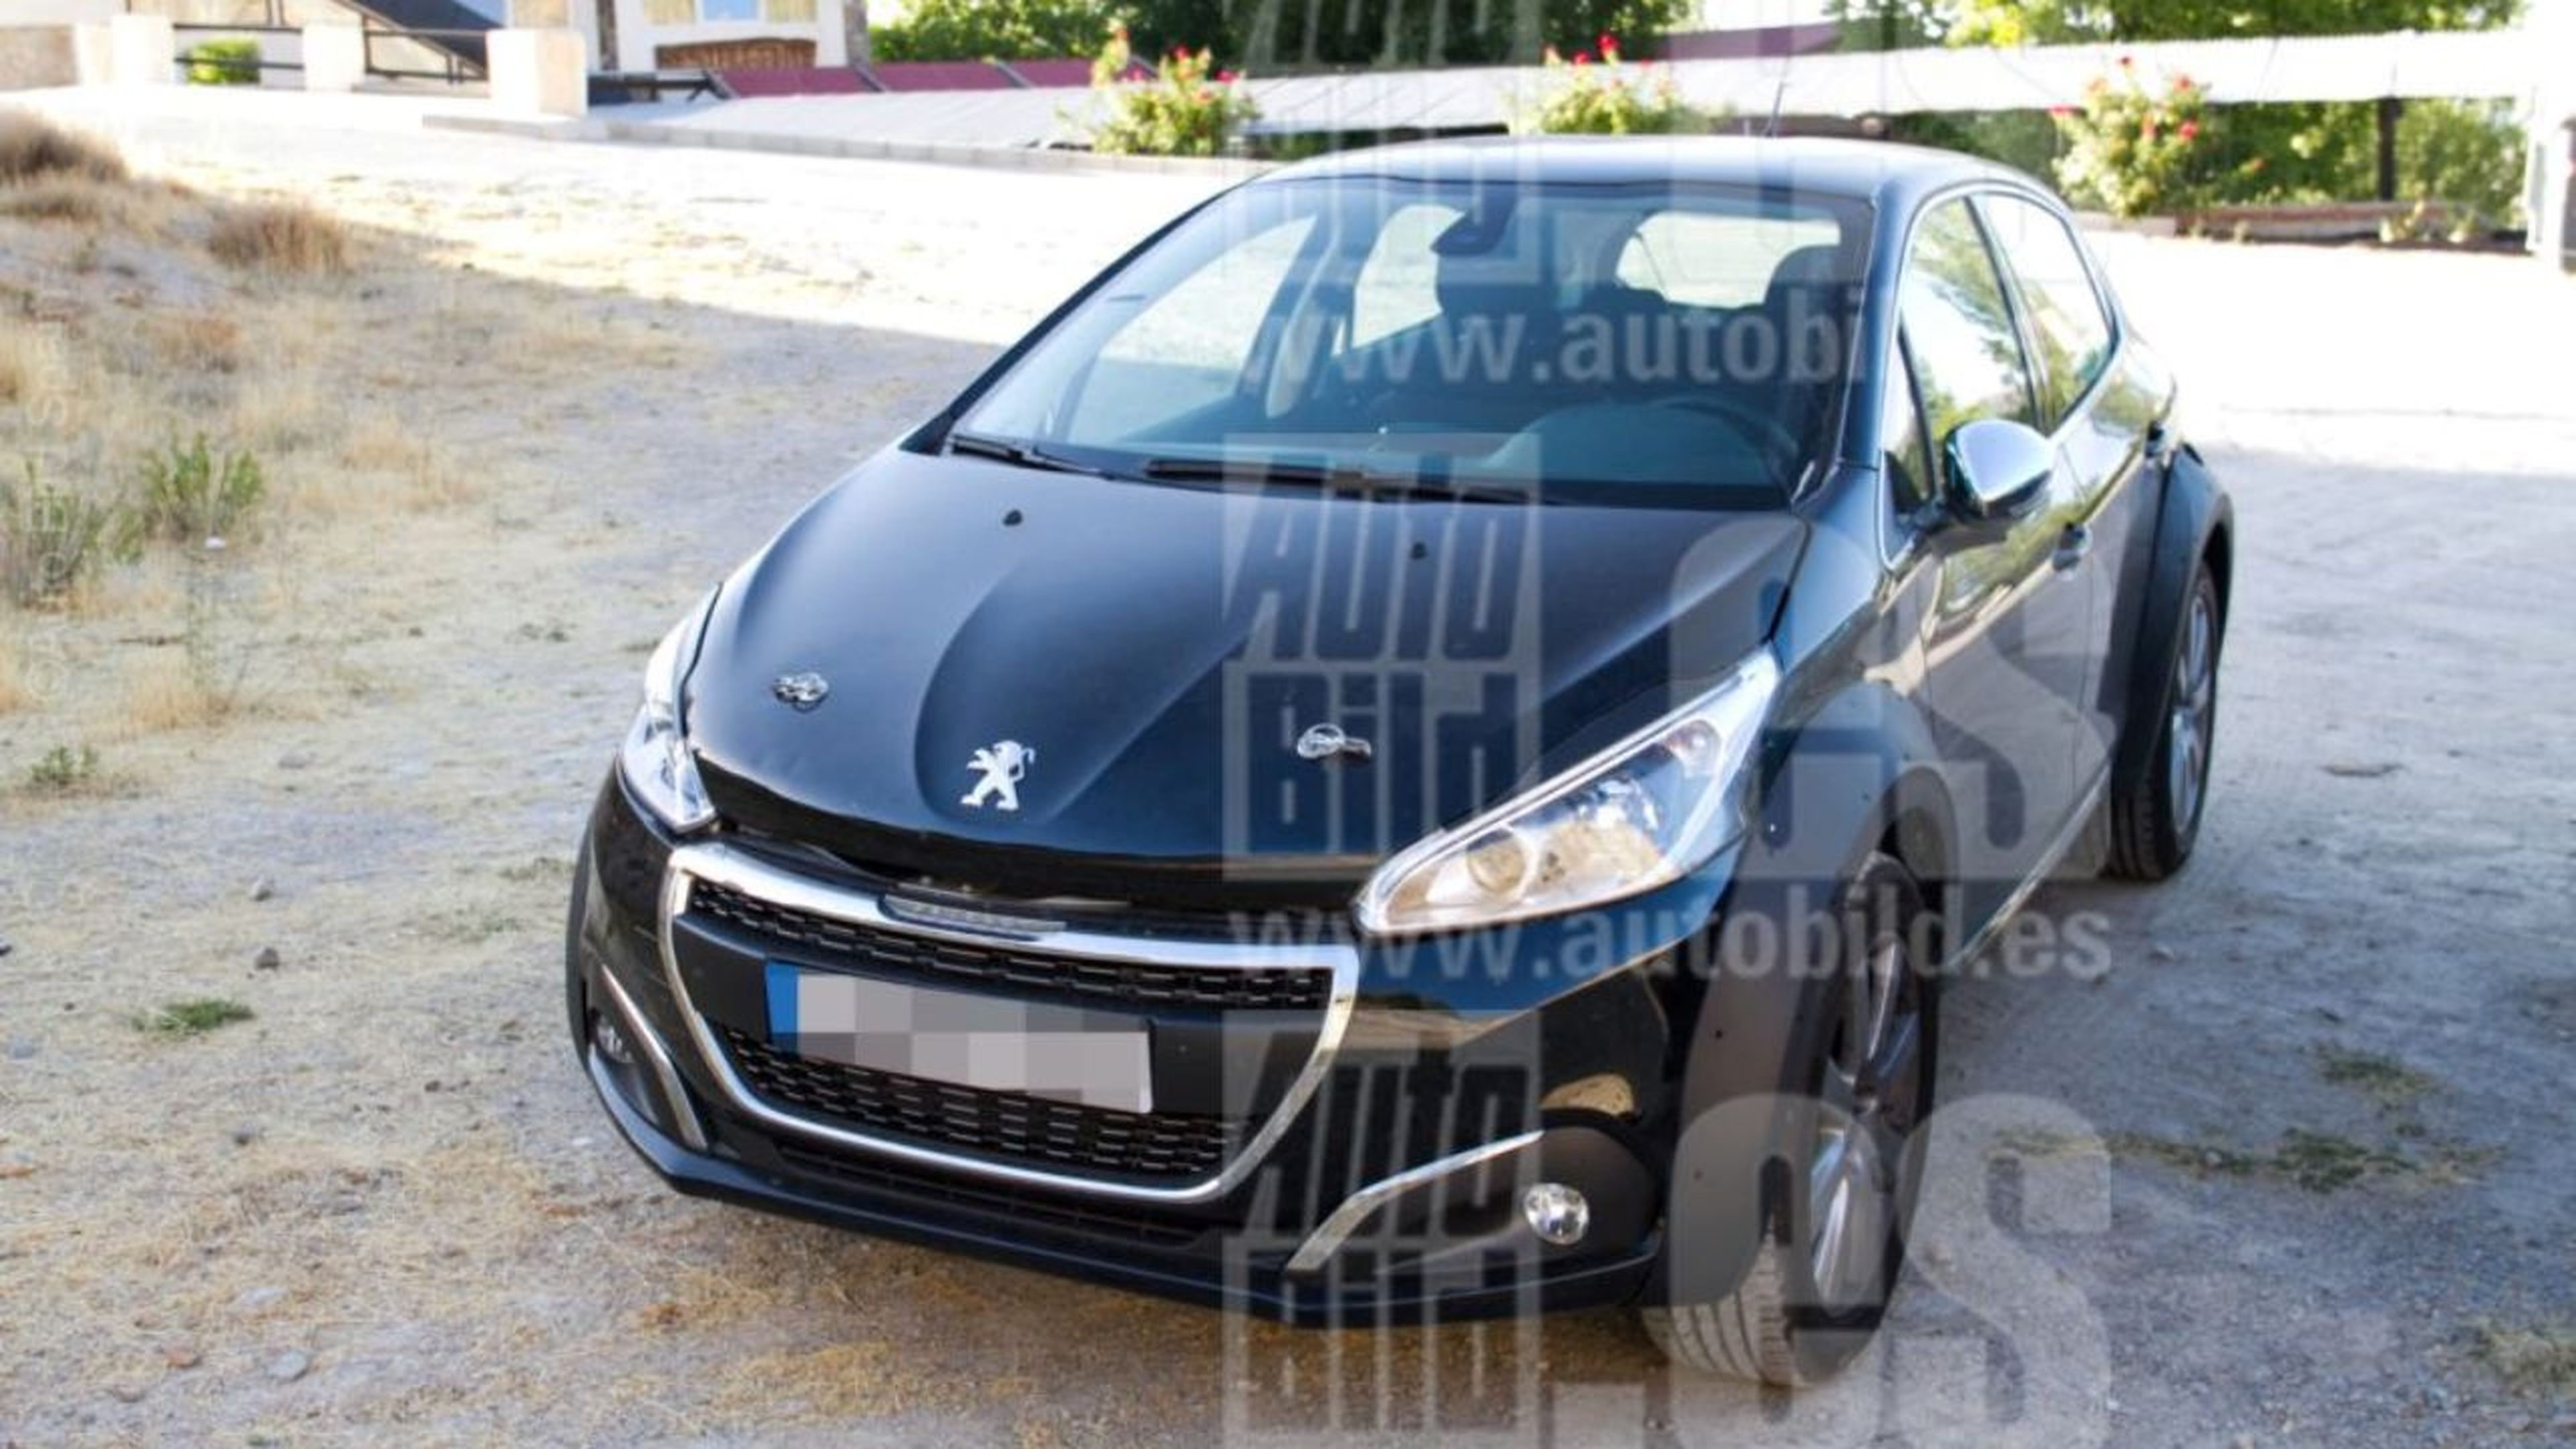 El nuevo Peugeot 3008 al detalle en estas fotos espía, el SUV